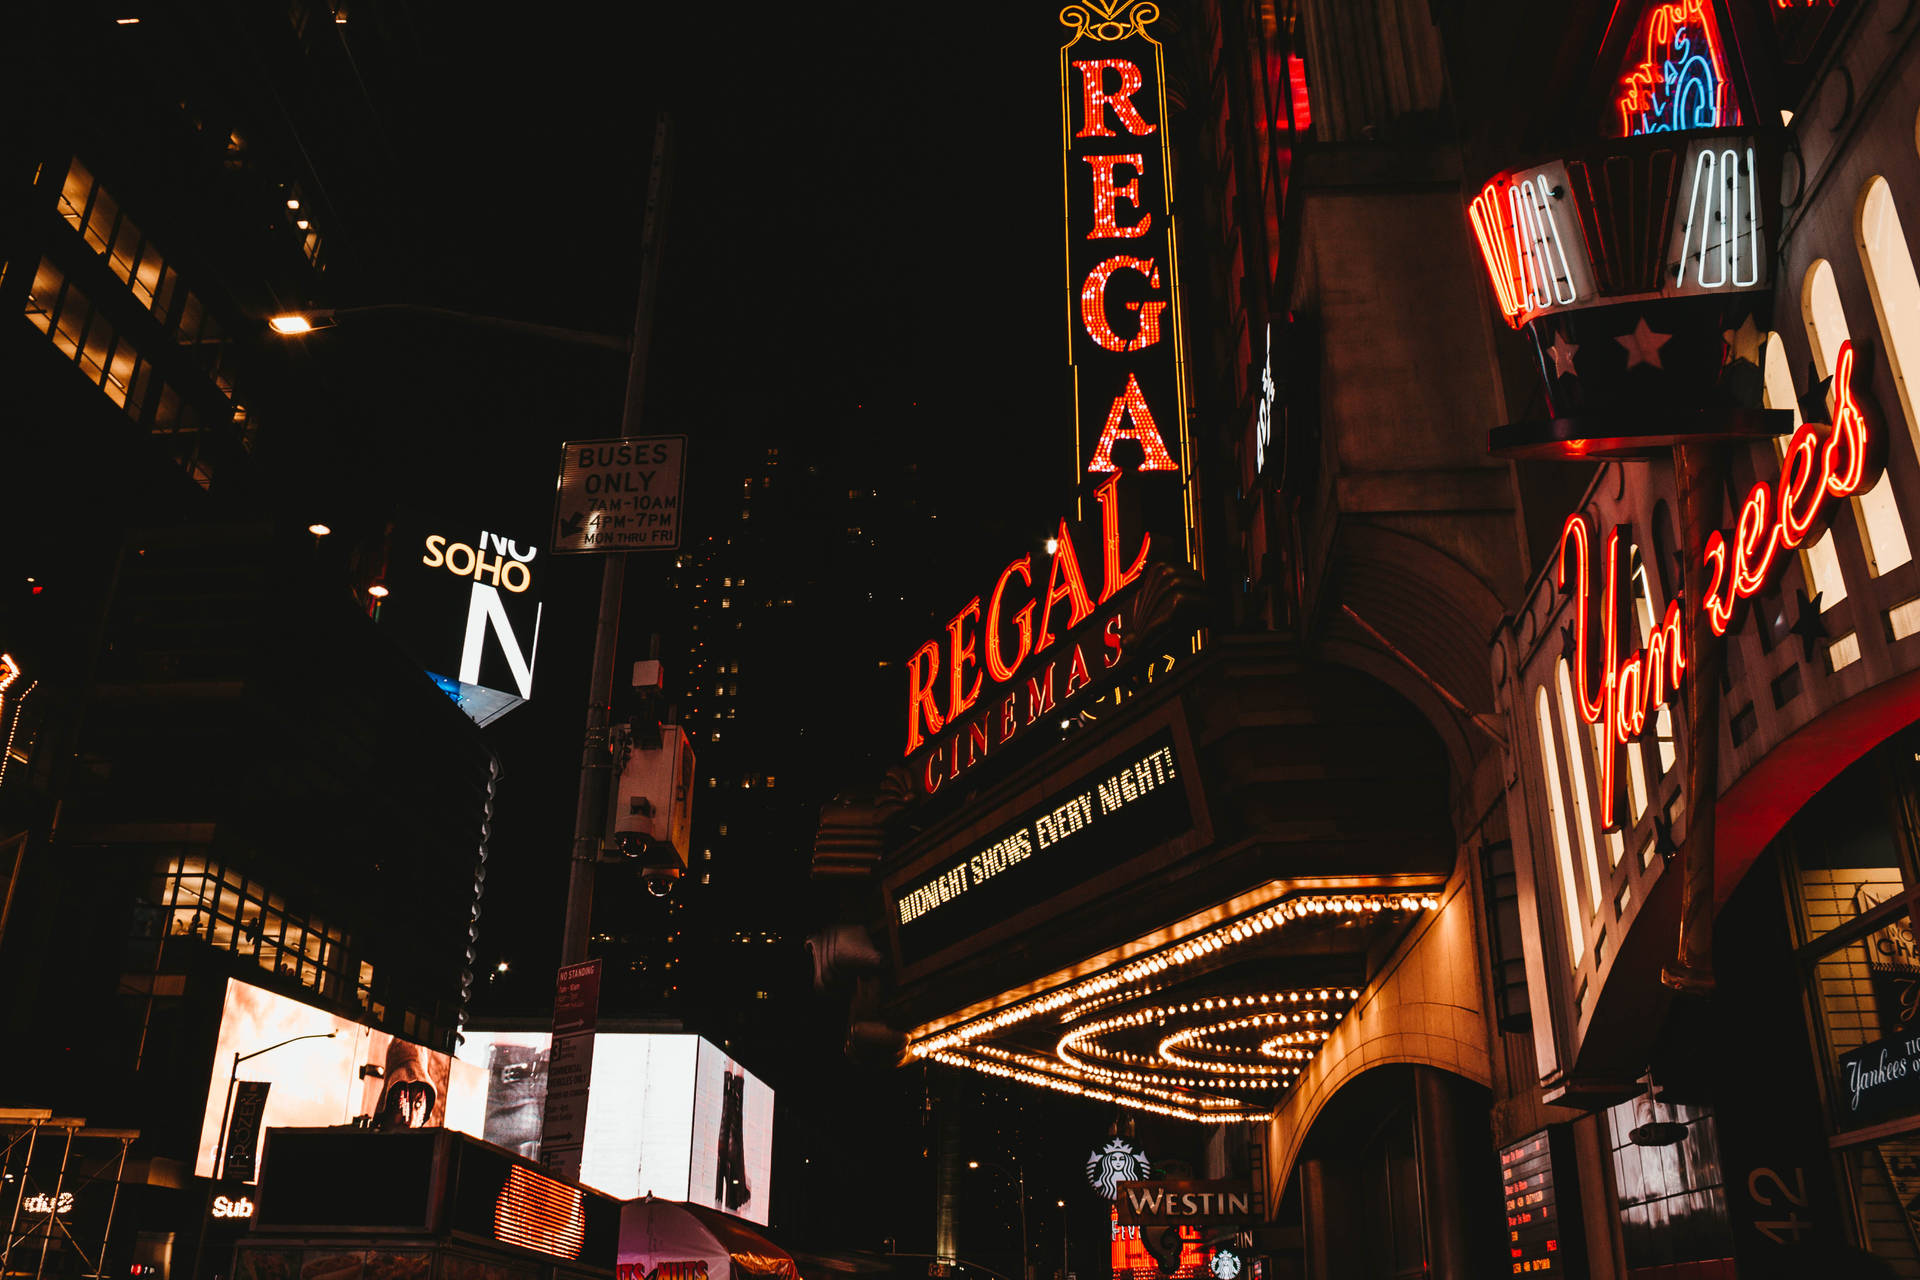 Beundr den fantastiske natudsigt ud over New York Citys Regal Cinema. Wallpaper